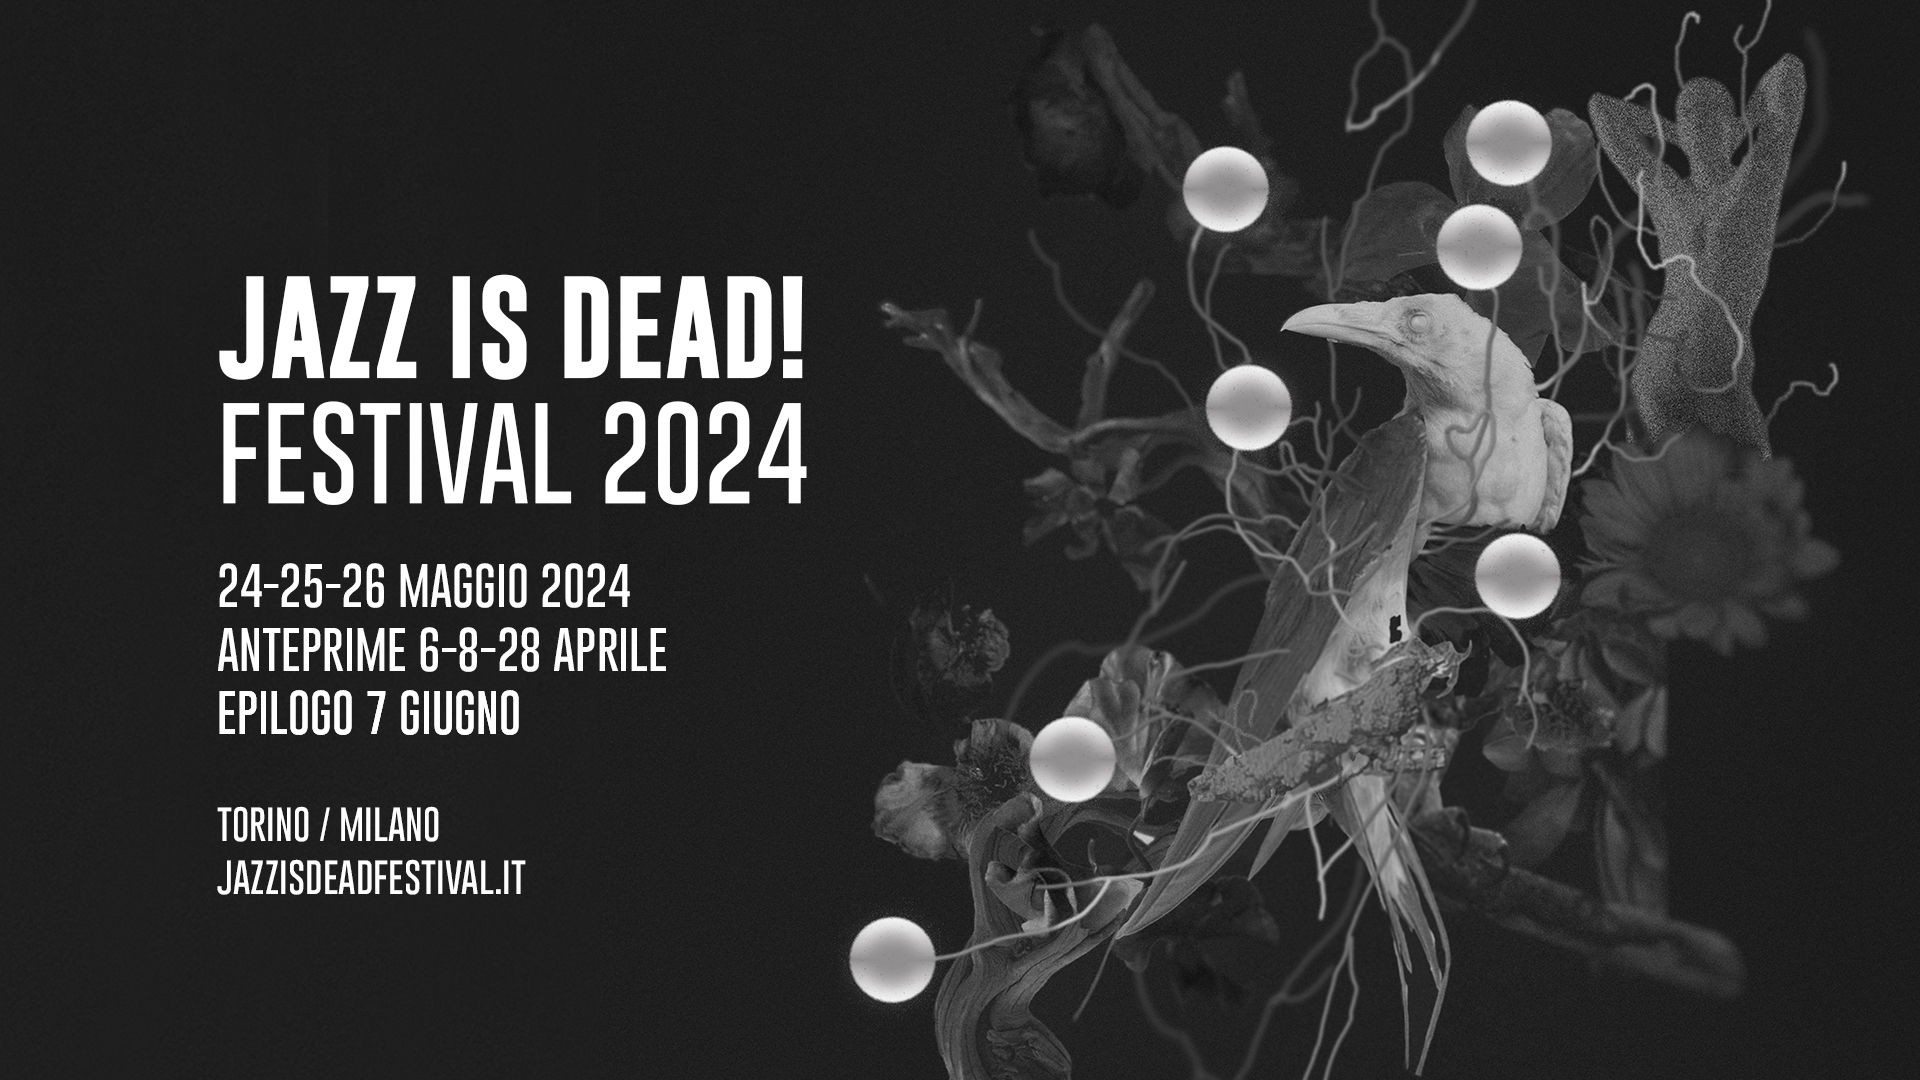 JAZZ IS DEAD! FESTIVAL 2024 settima edizione: 24-25-26 maggio 2024